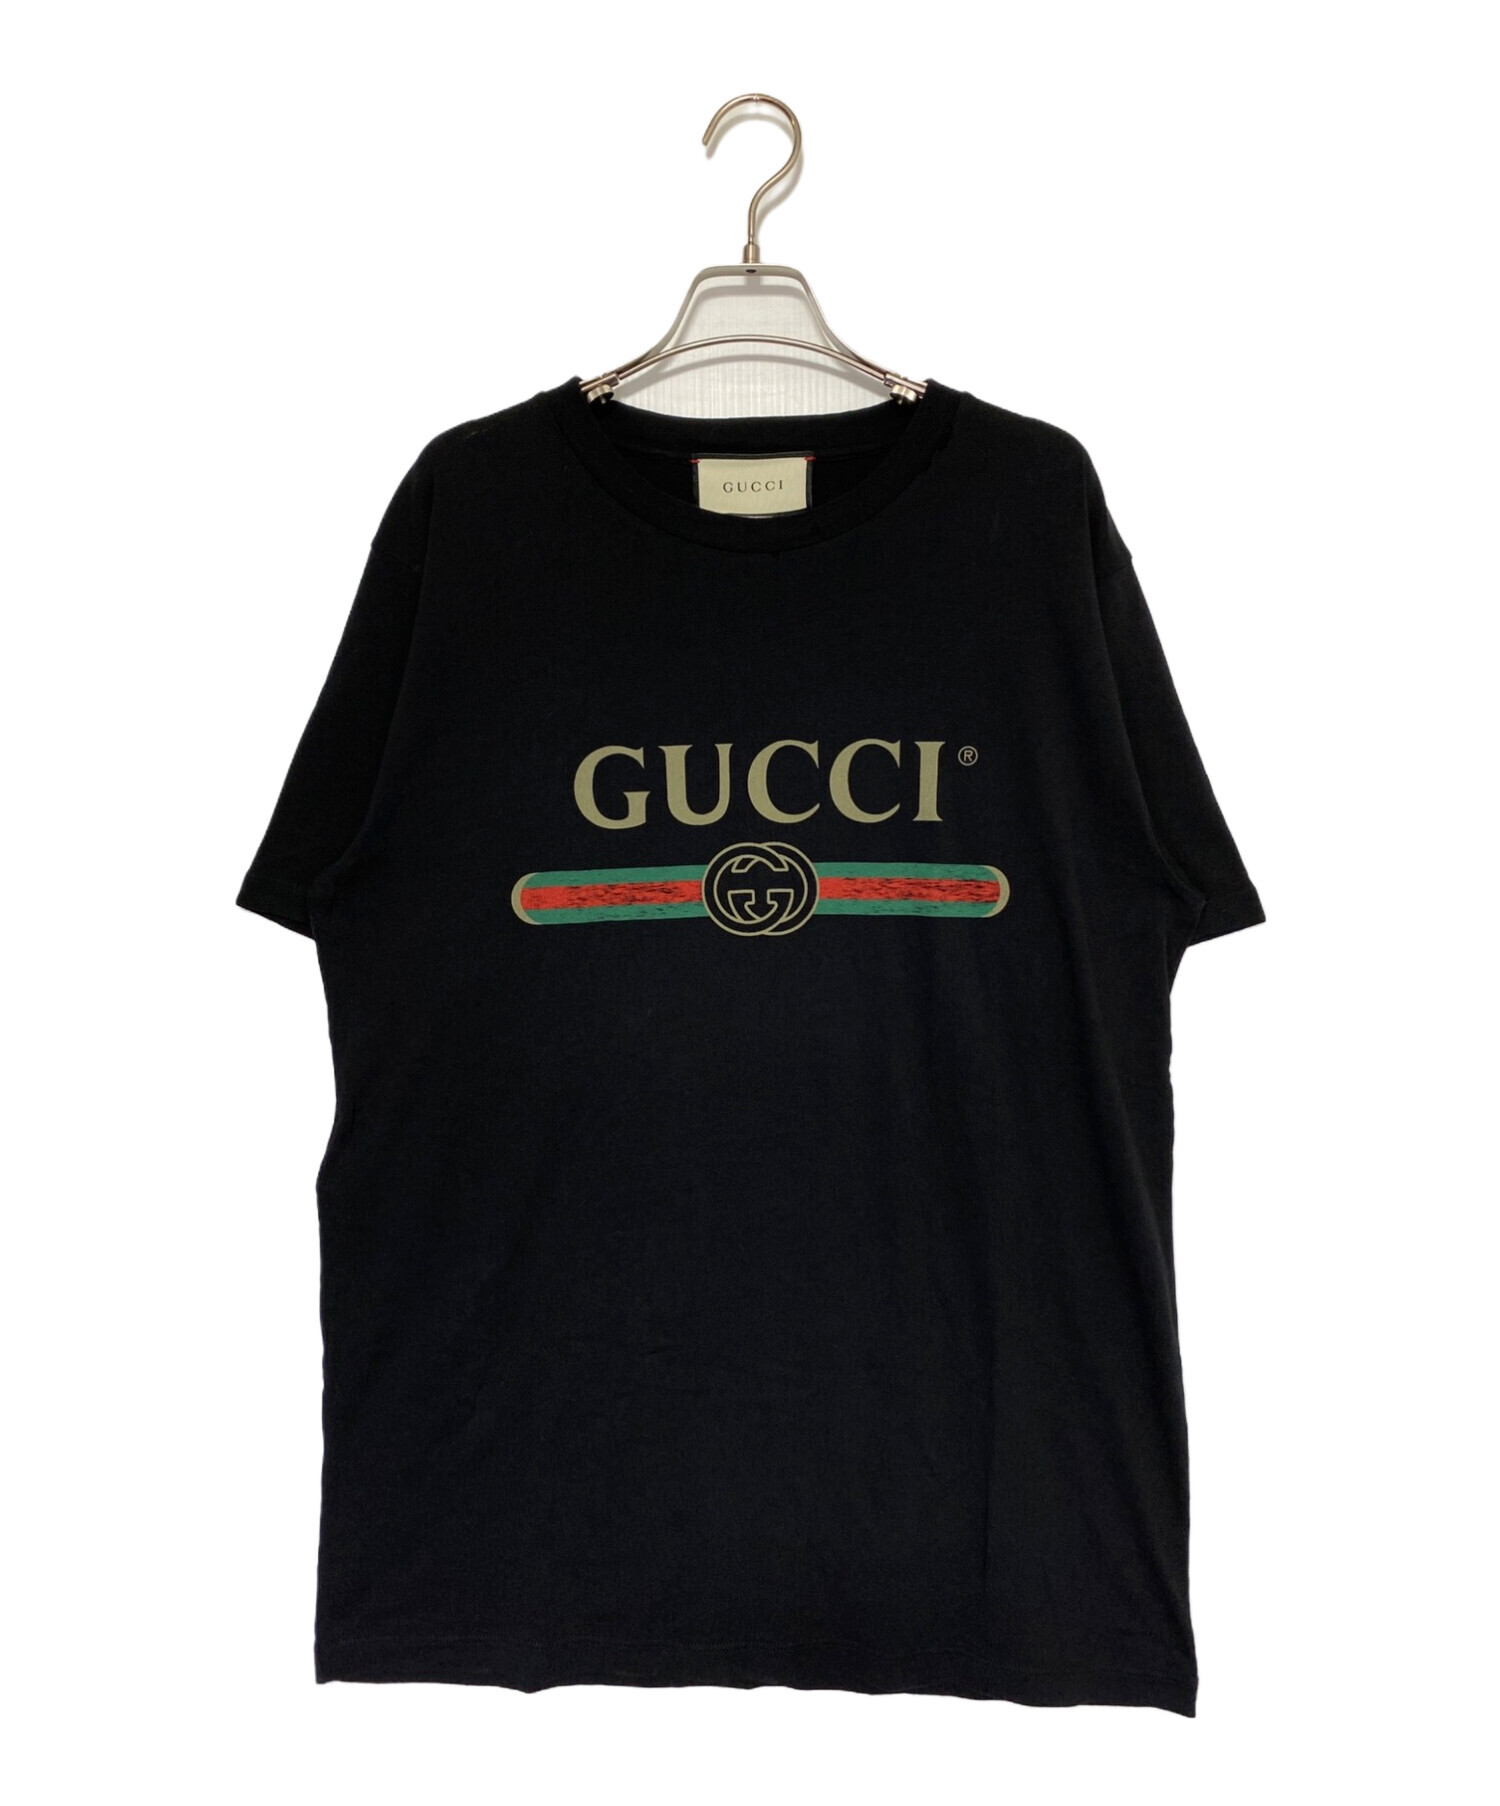 GUCCI (グッチ) ダメージ加工ロゴTシャツ ブラック サイズ:S